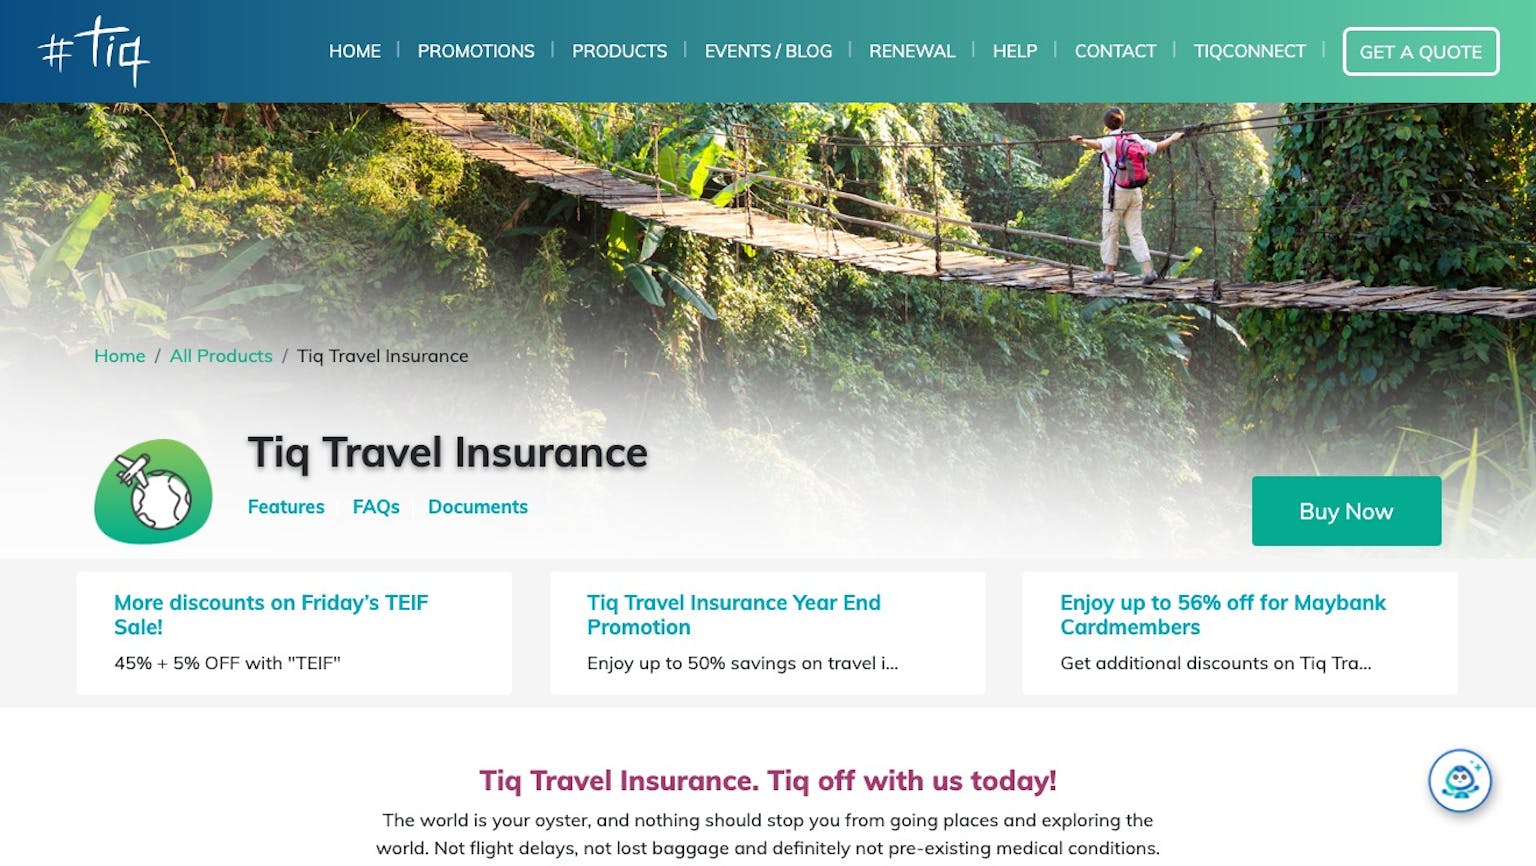 Tiq Travel Insurance